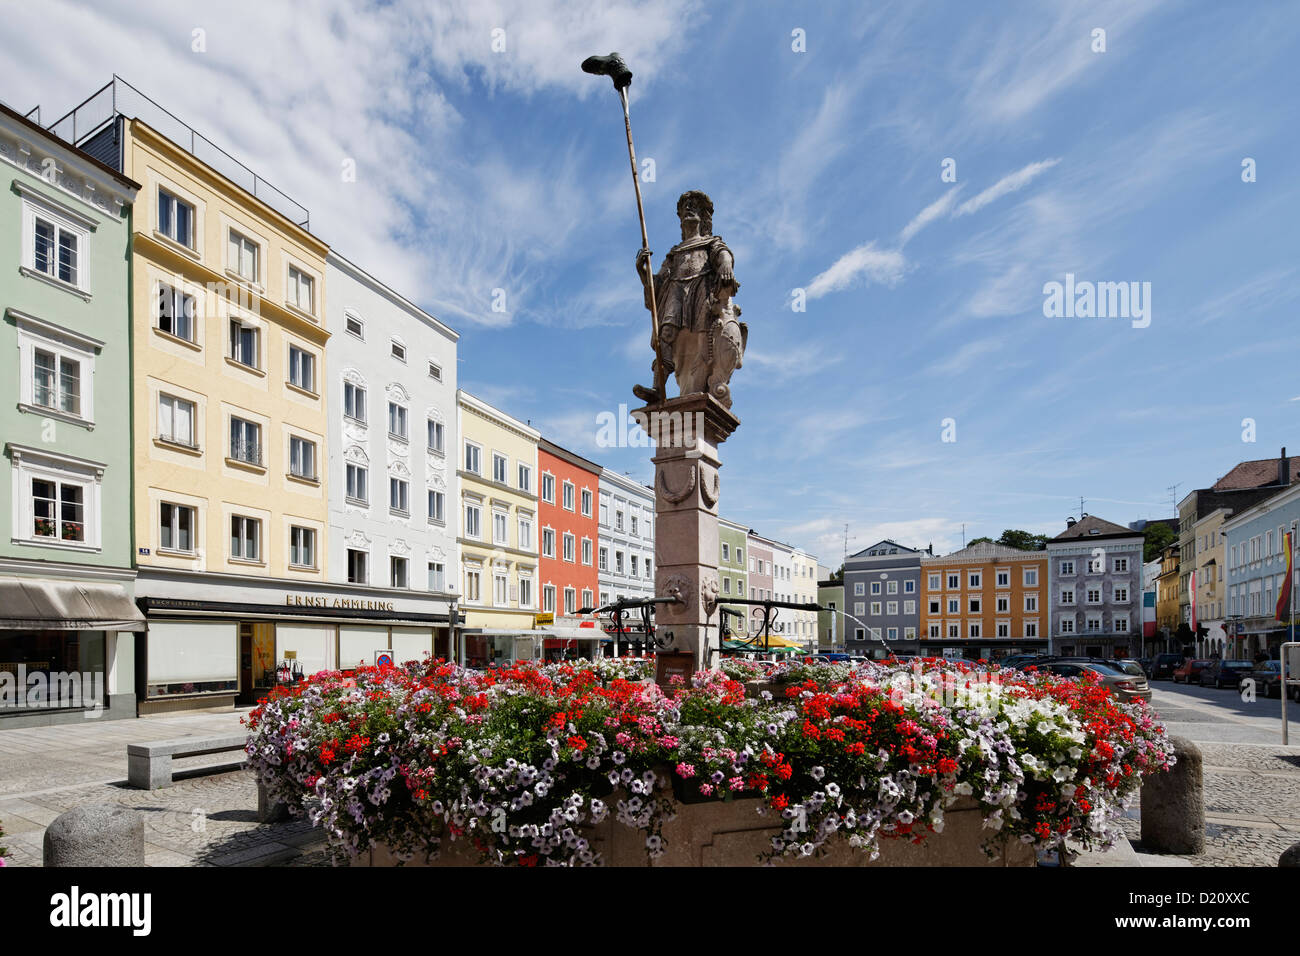 Austria, Upper Austria, Main square in Ried im Innkreis with Dietmar Fountain Stock Photo